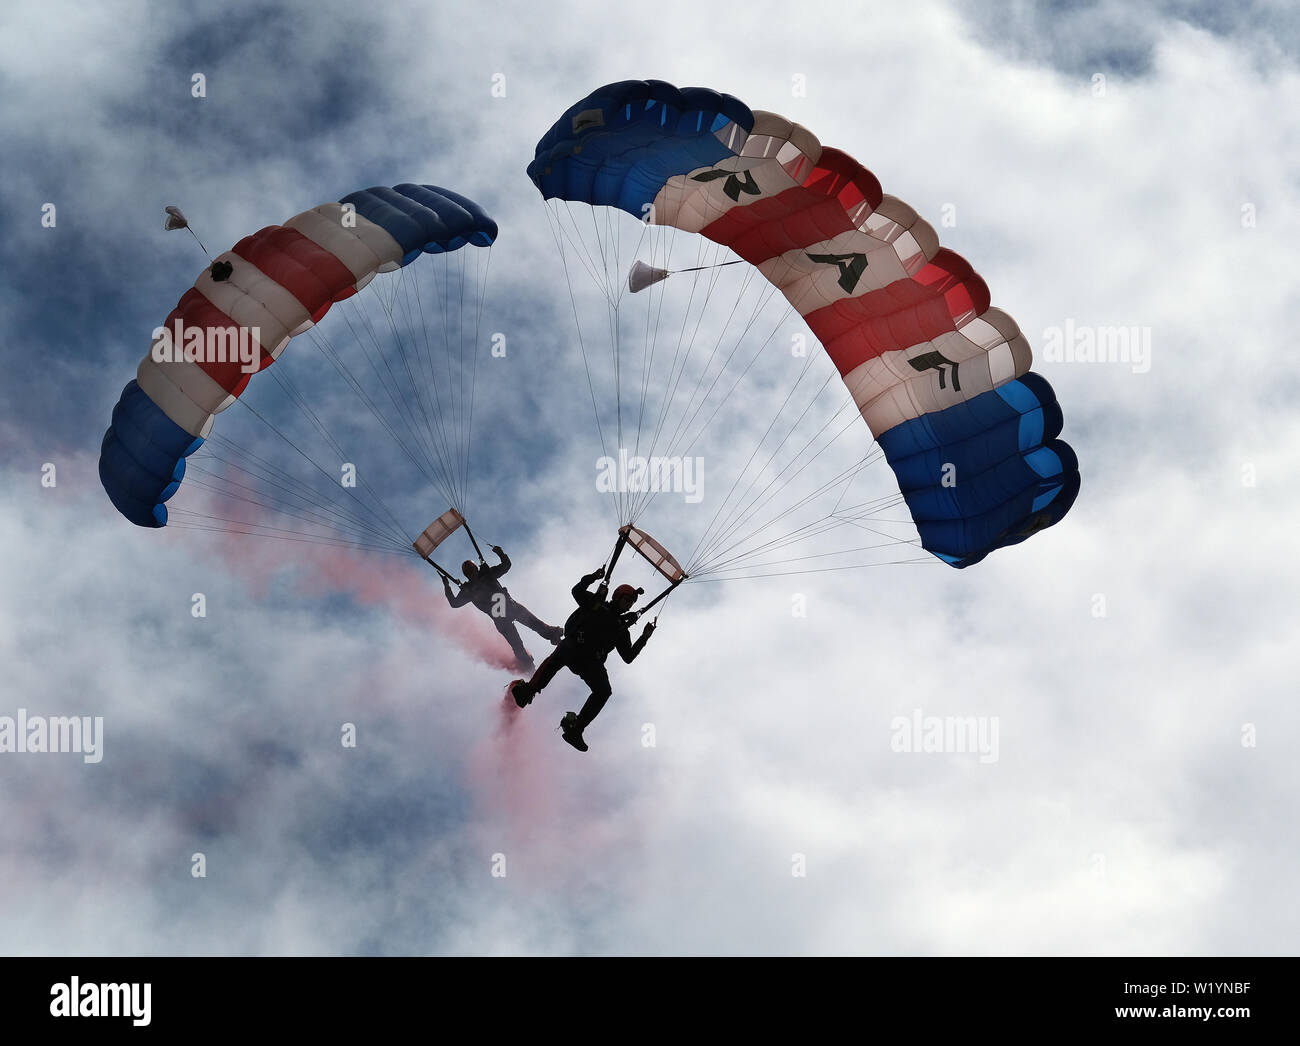 RAF Falcon freefall parachute mostrar el equipo en acción. Foto de stock